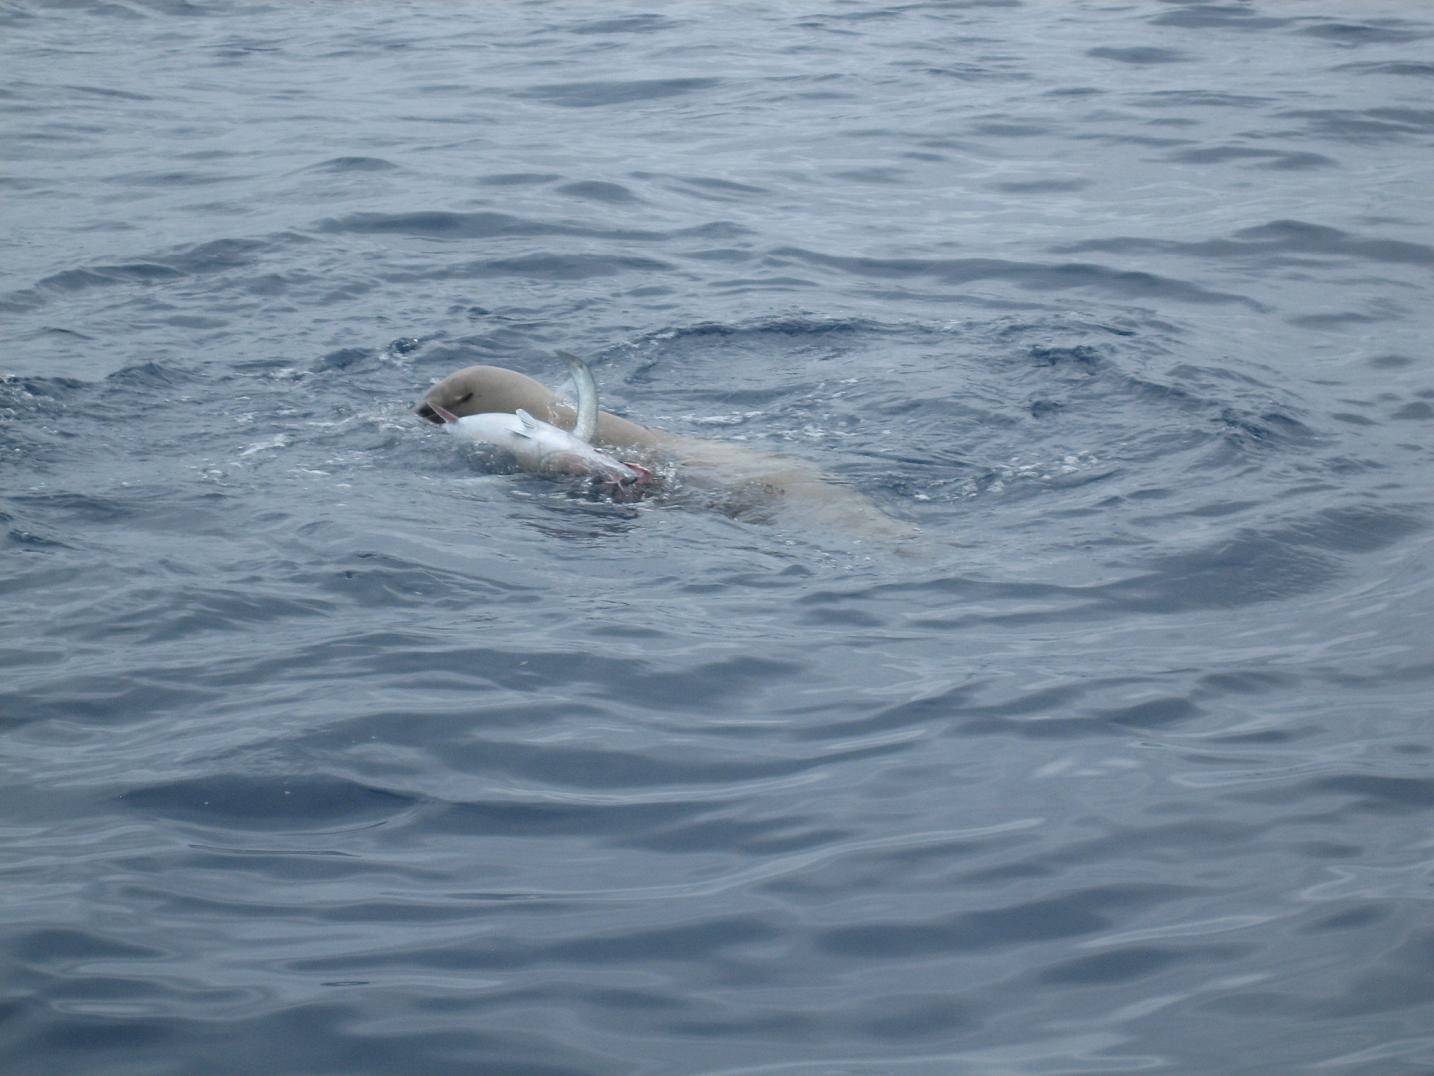 Seal เป็นปัญหากับนักตก ปลาที่นี่เสมอ  ทั้ง ฉลาด ทั้งตะกละ คอยมาเเย่ง ปลาที่ติดเบ็ดเป็นประจำ  
 ปีที